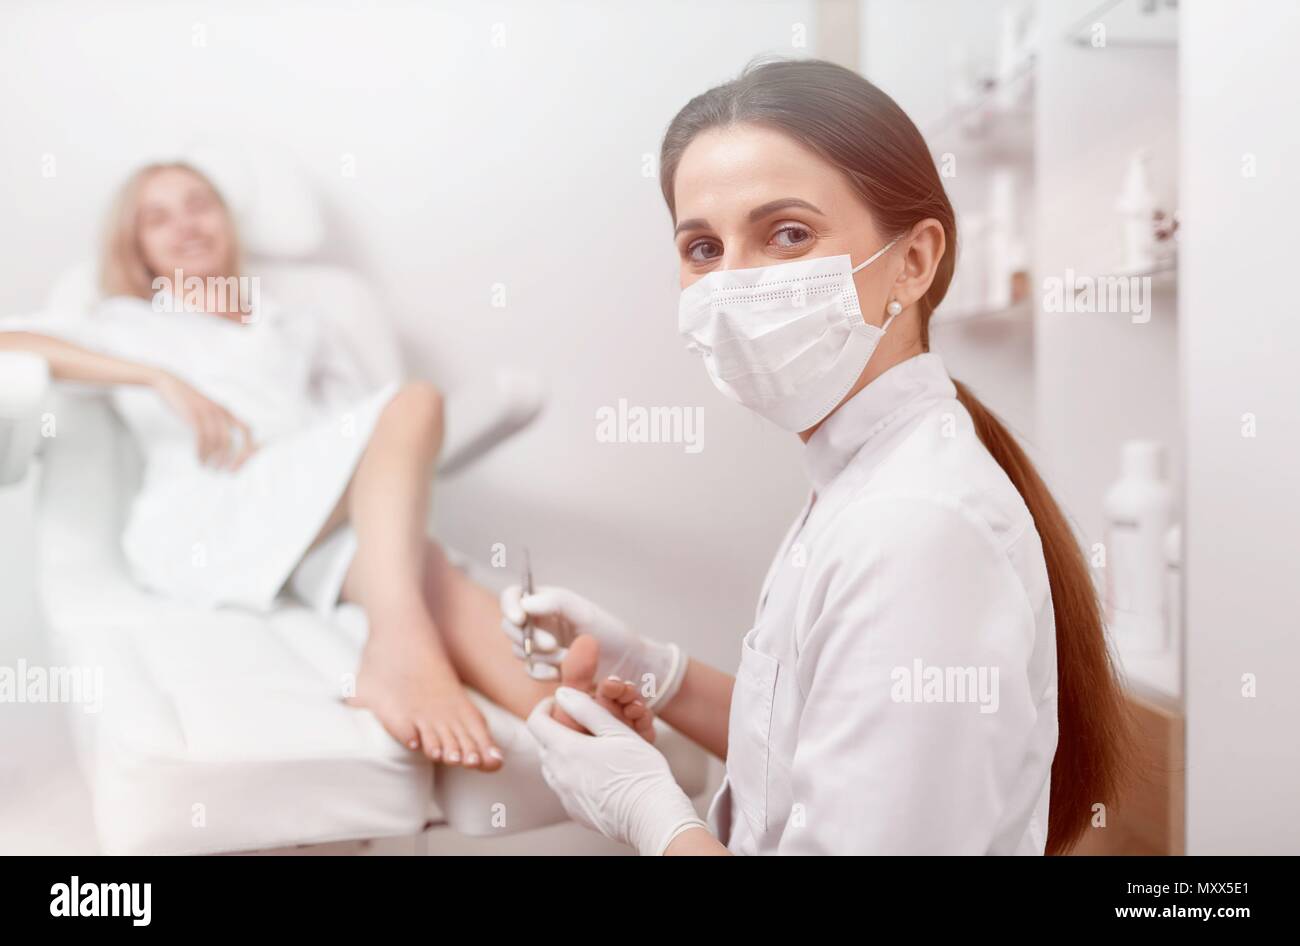 Fußarzt in der Maske auf das Gesicht auf Kamera und Arbeiten. Stockfoto